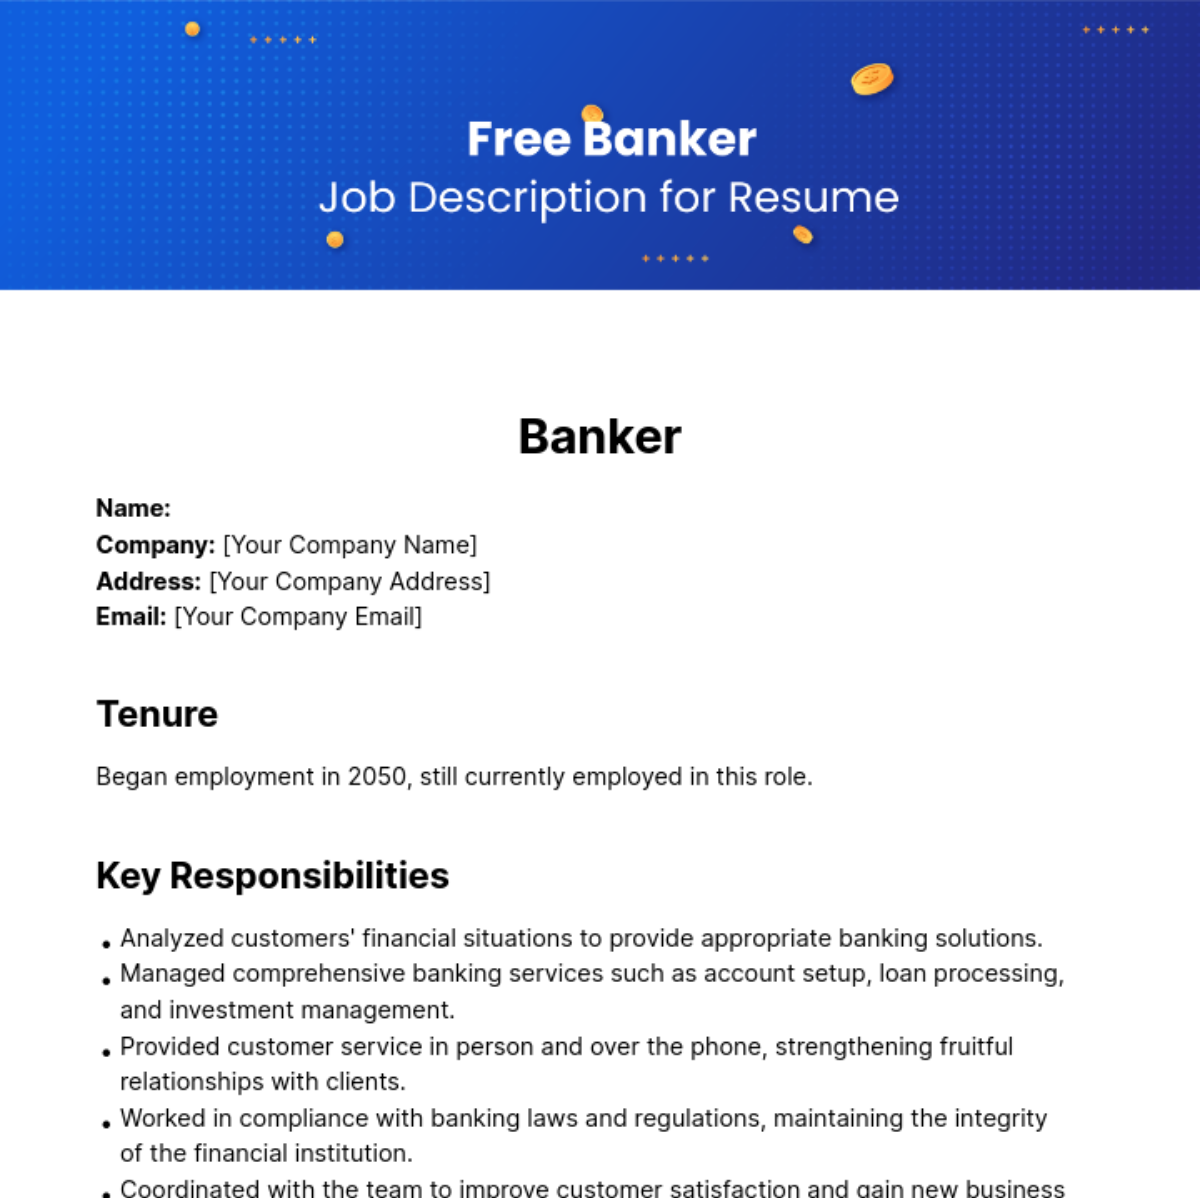 Banker Job Description for Resume Template